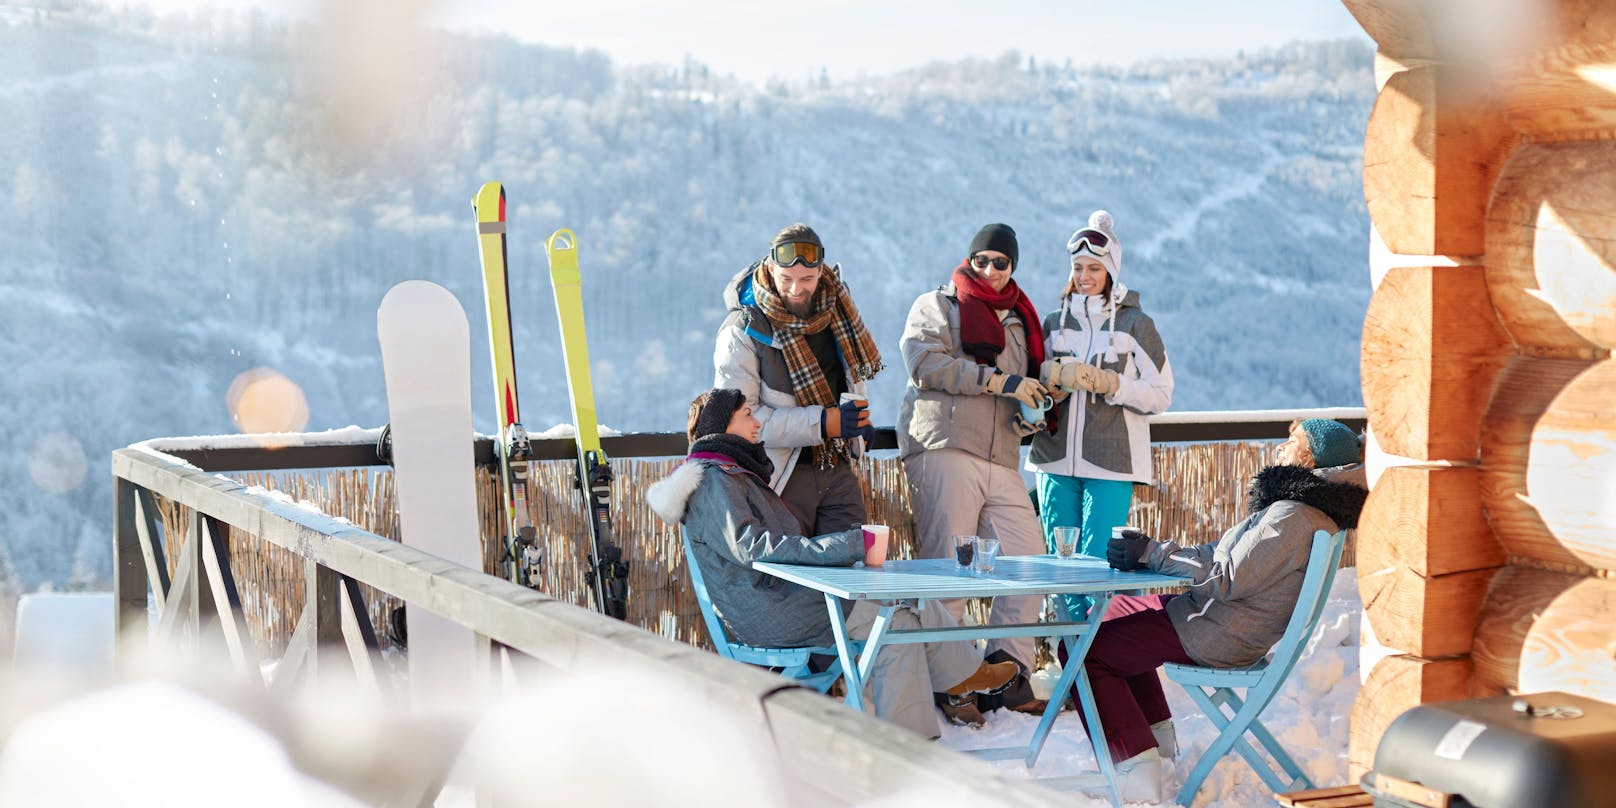 Während des Skitages besuchte die deutsche Urlauberin offensichtlich mehrere Gastlokale und konsumierte einige alkoholische Getränke (Symbolfoto)